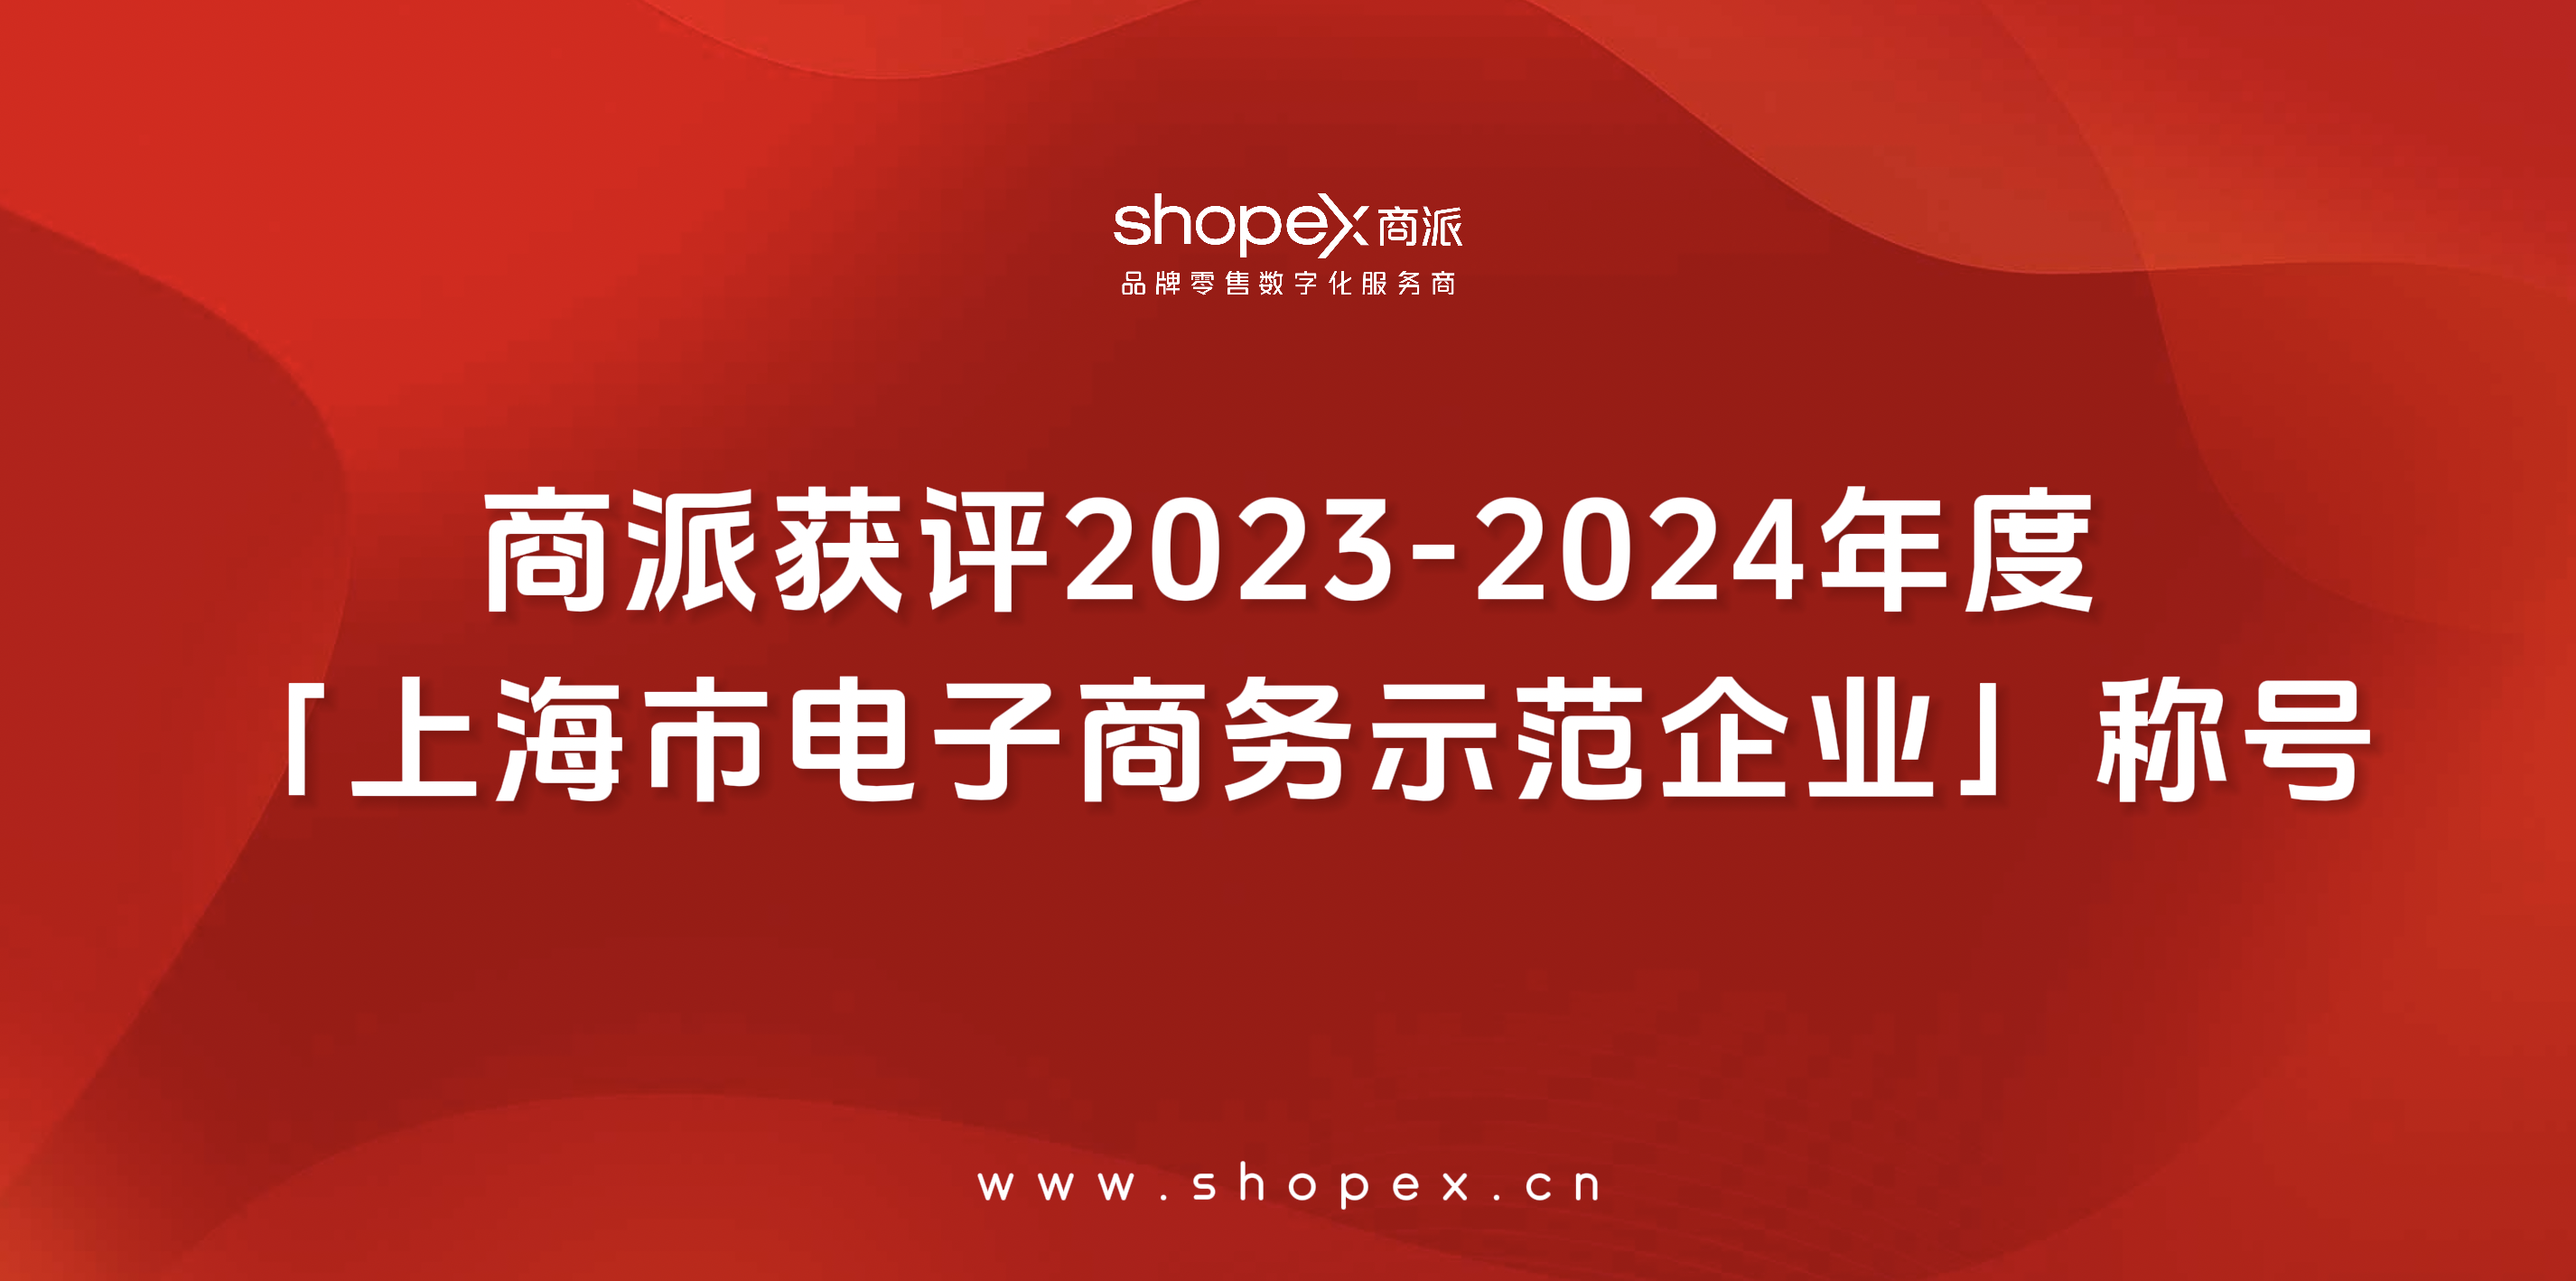 商派获评2023-2024年度「上海市电子商务示范企业」称号